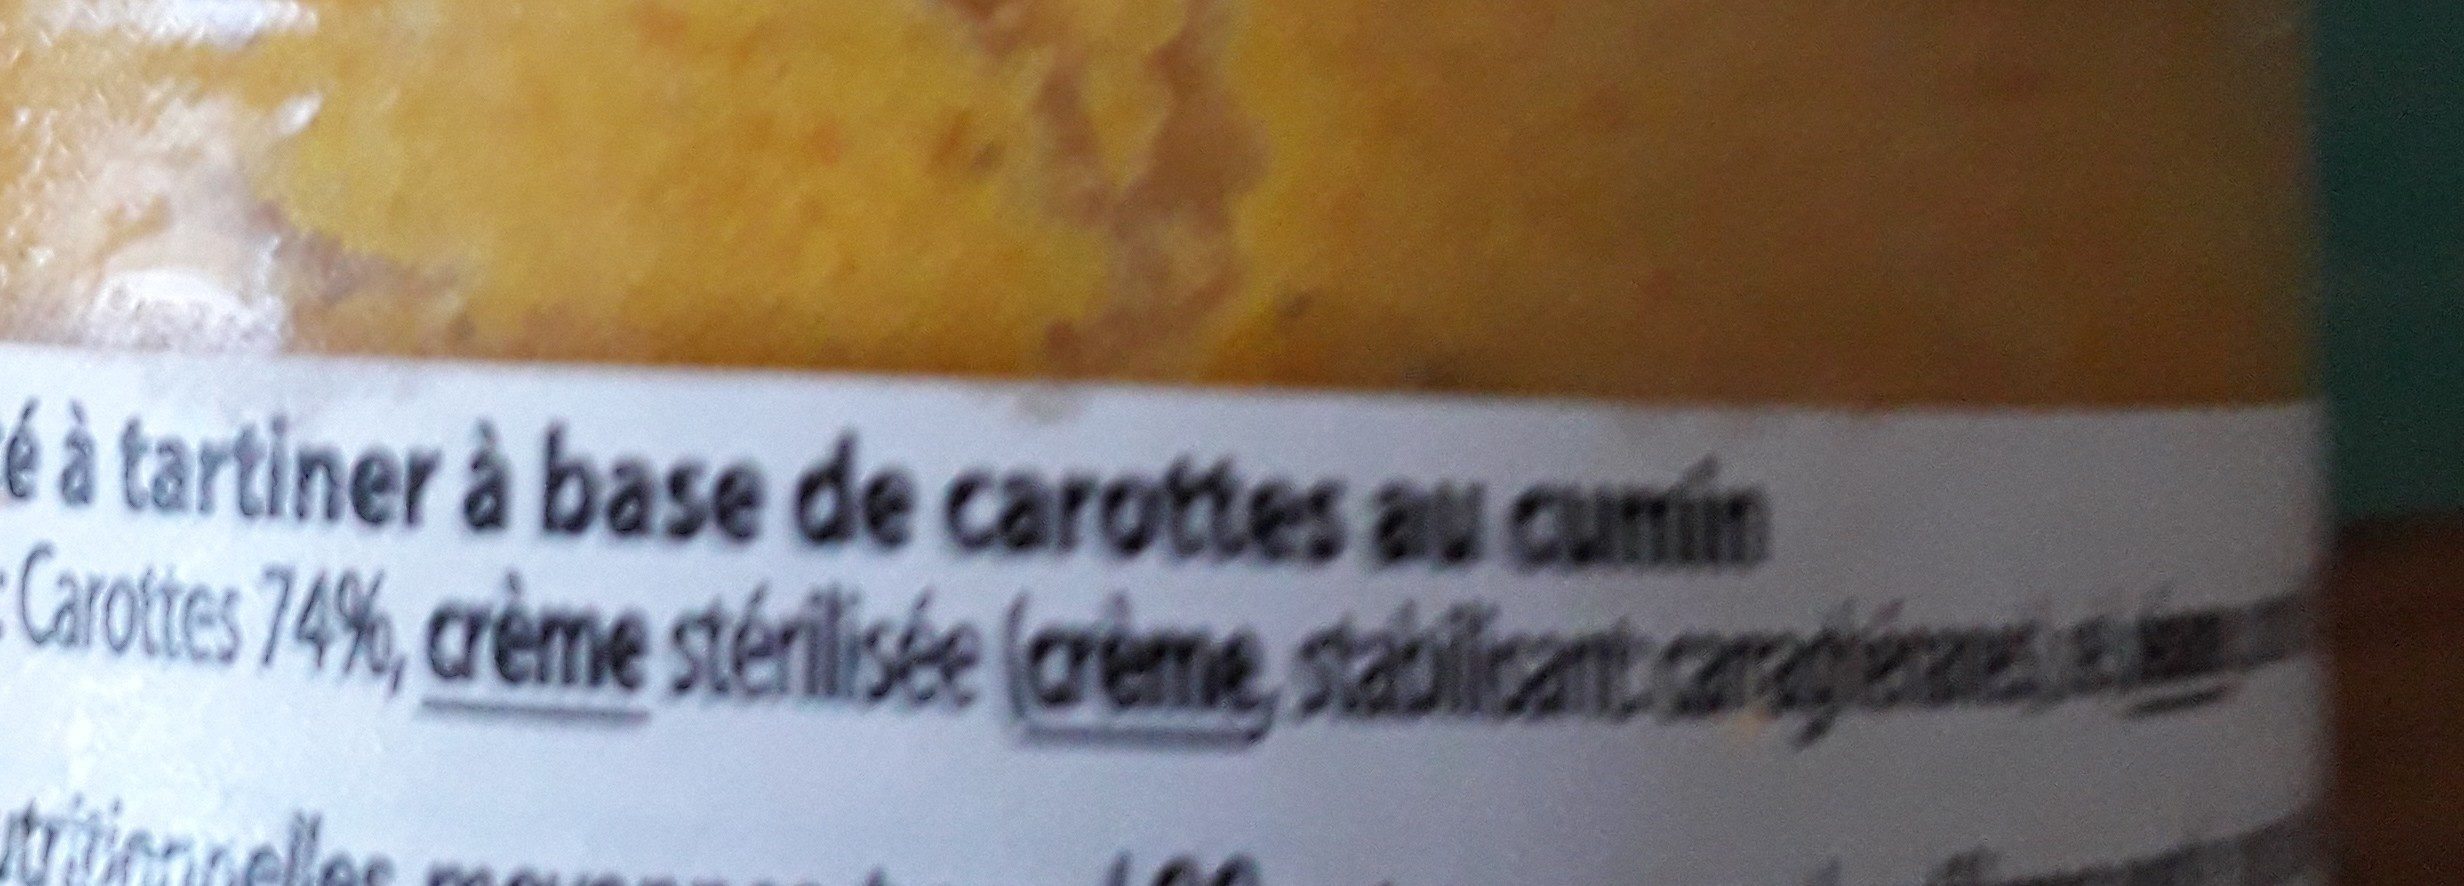 Délice de Carottes au Cumin à Tartiner - Ingrédients